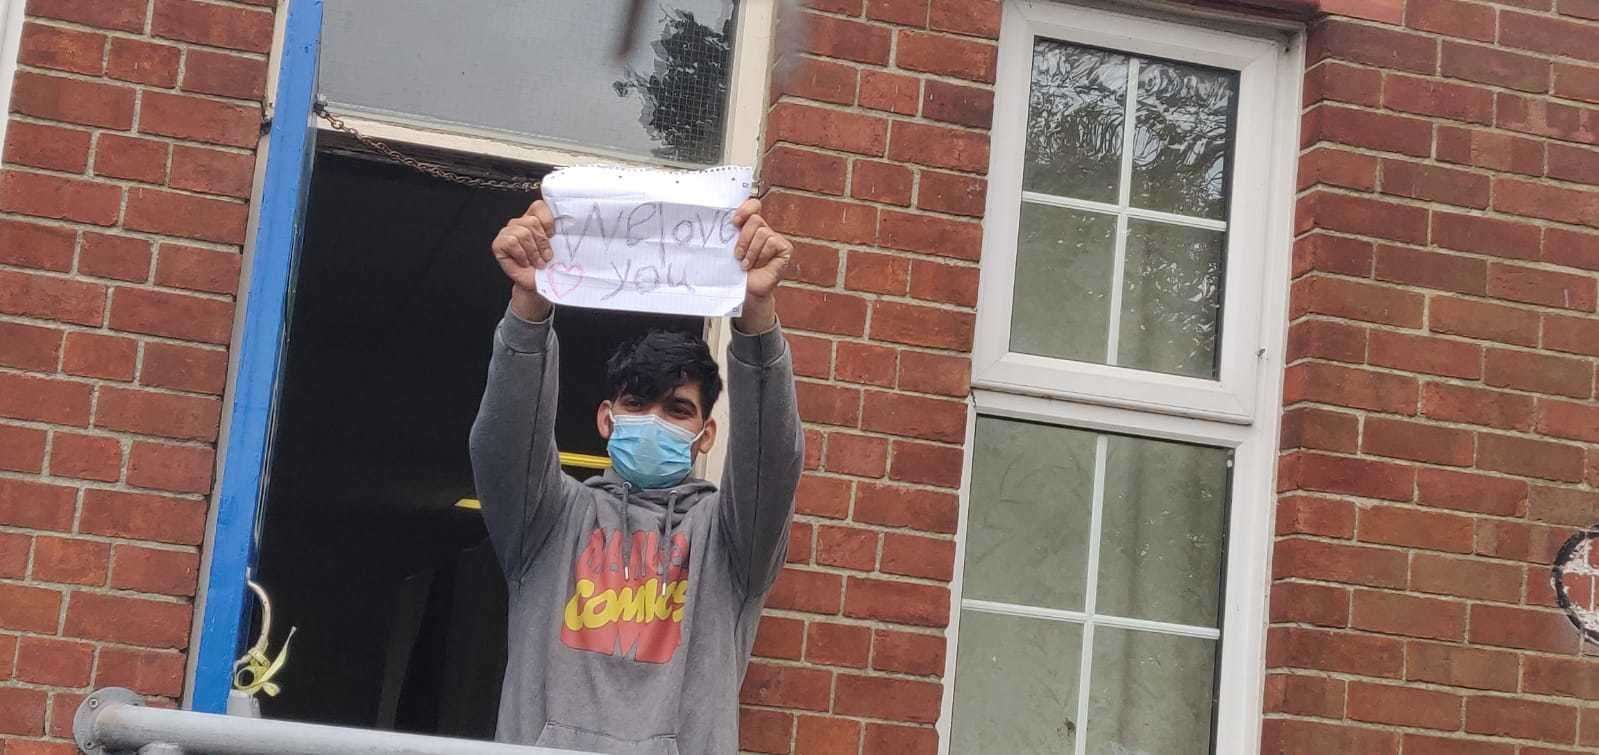 'We love you' - an asylum seeker holds up a sign at Napier Barracks